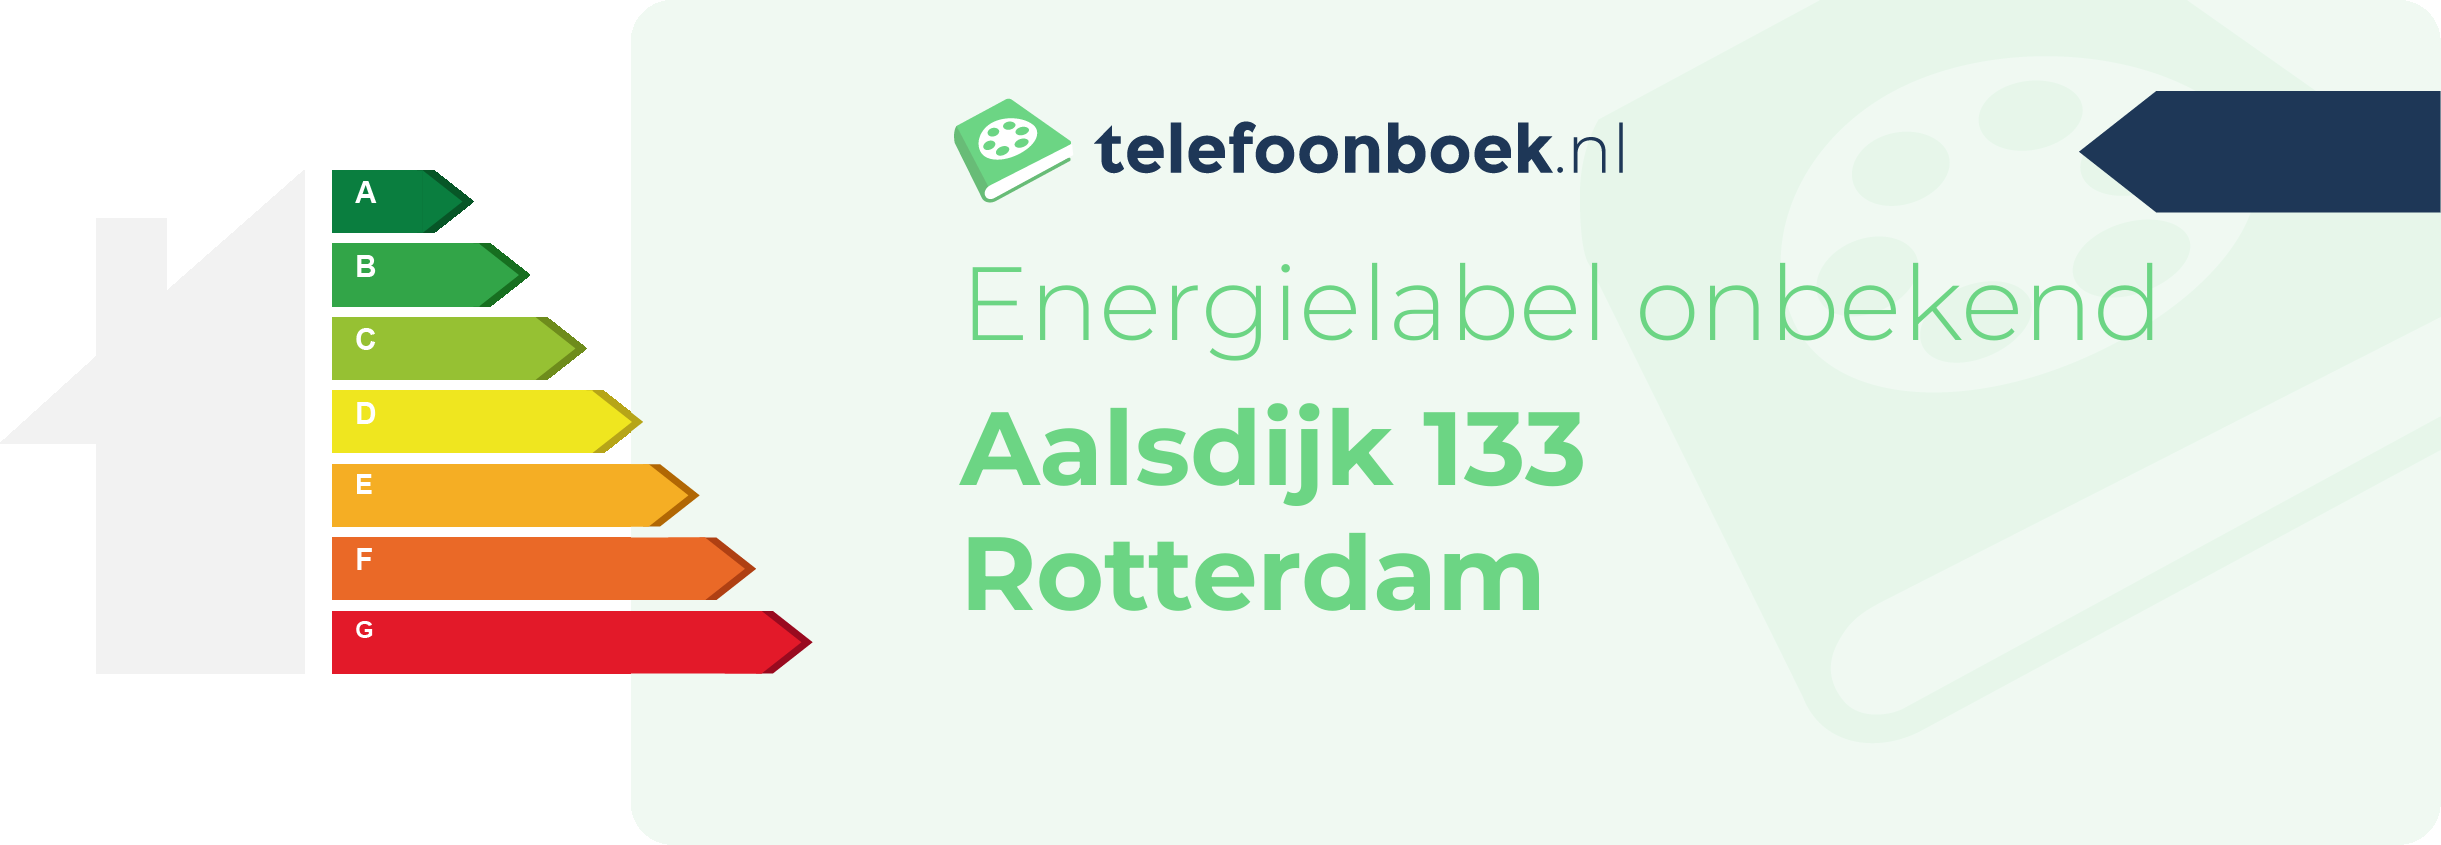 Energielabel Aalsdijk 133 Rotterdam